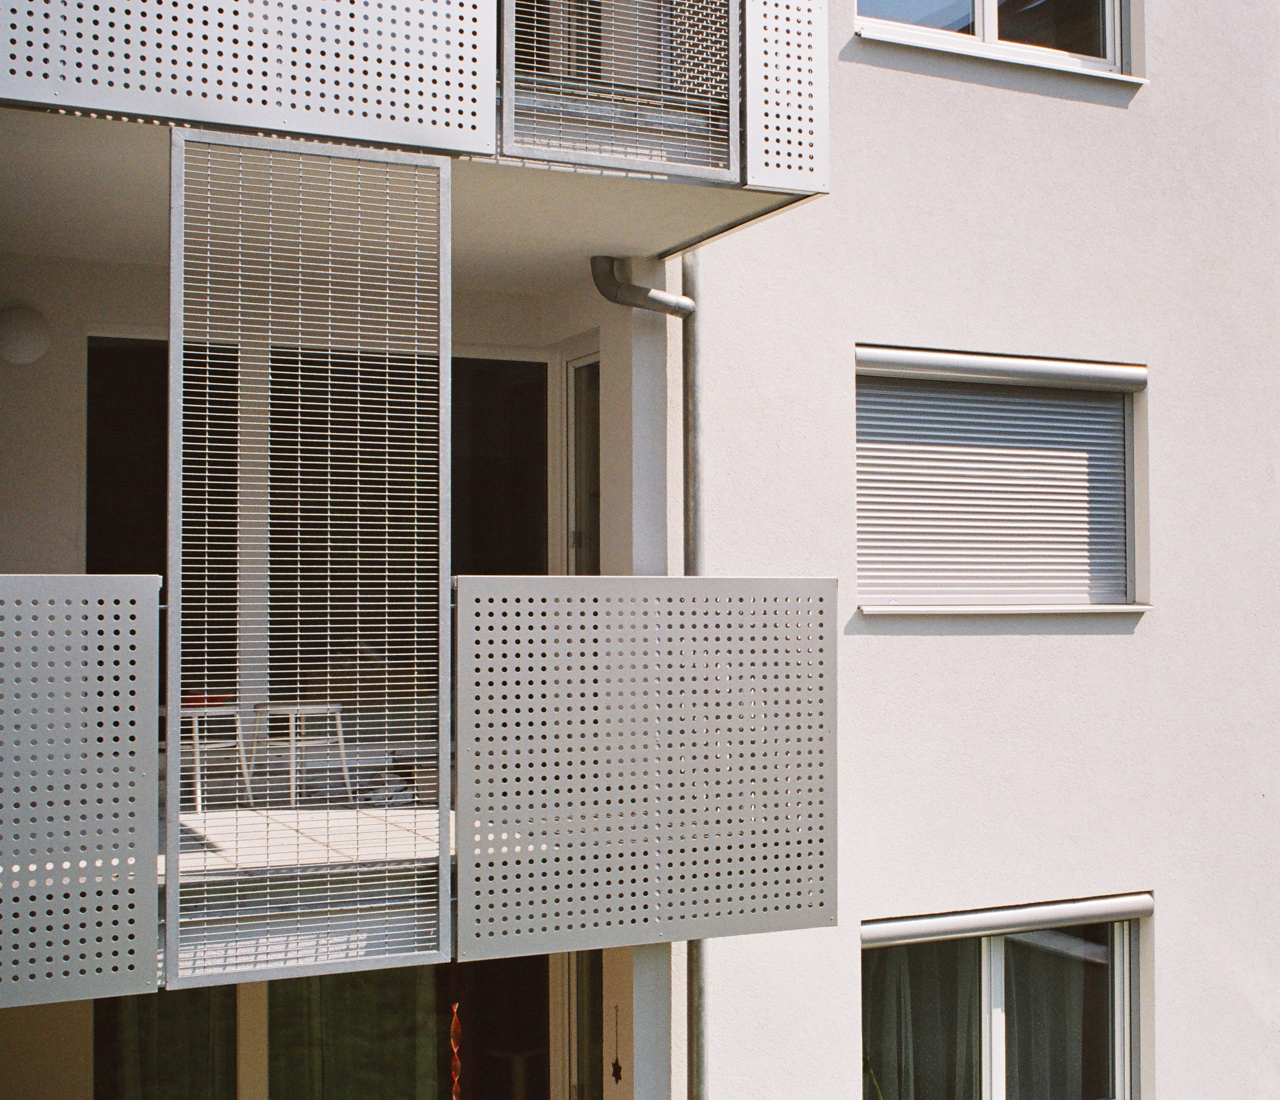 Terrasse als Teil einer Wohnhausanlage (Paschinger Architekten)